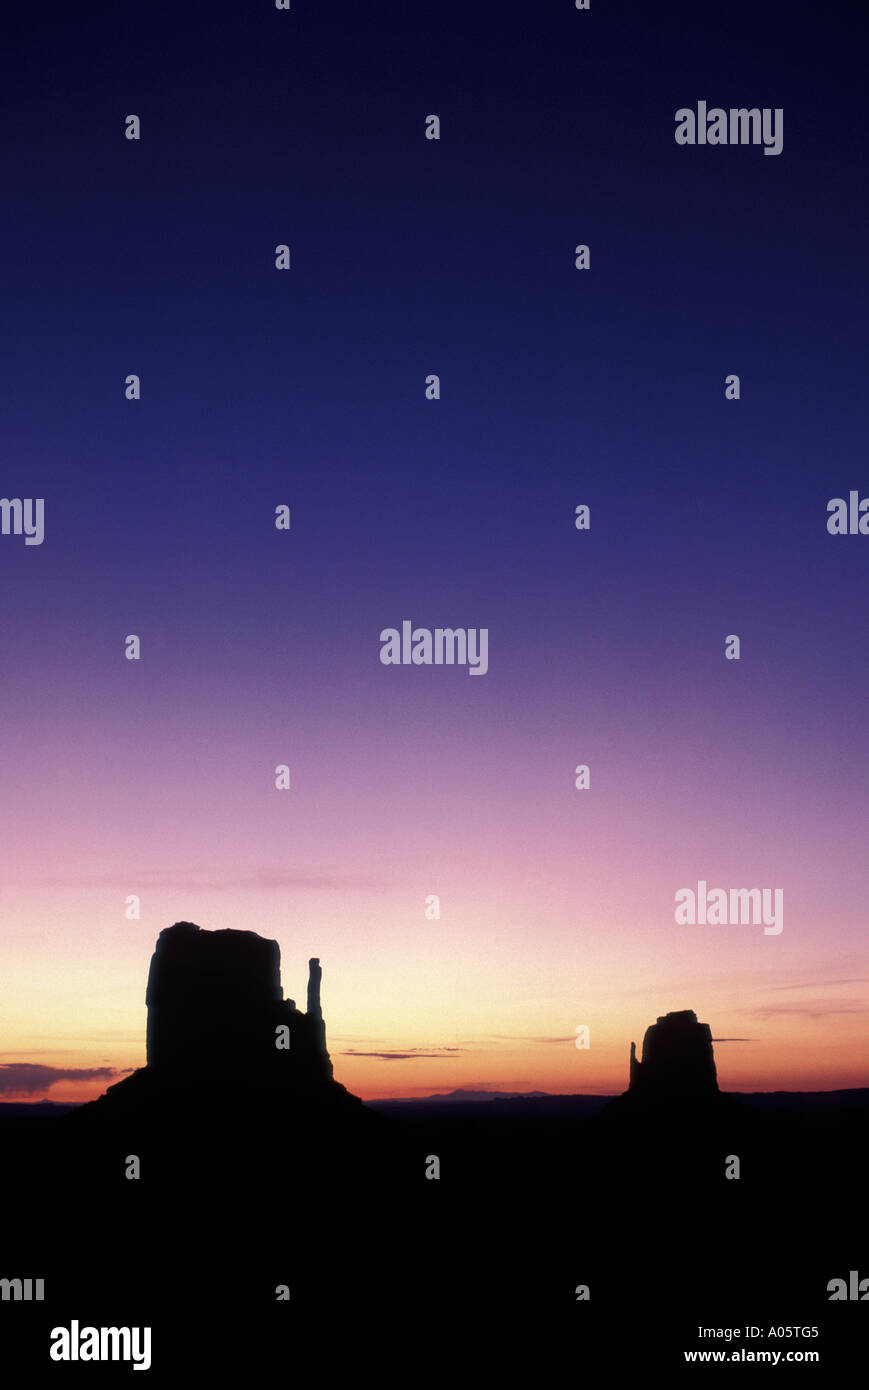 Die Fäustlinge Monument Valley Indianerland in Arizona und Utah Grenze Vereinigte Staaten von Amerika-Nordamerika Stockfoto